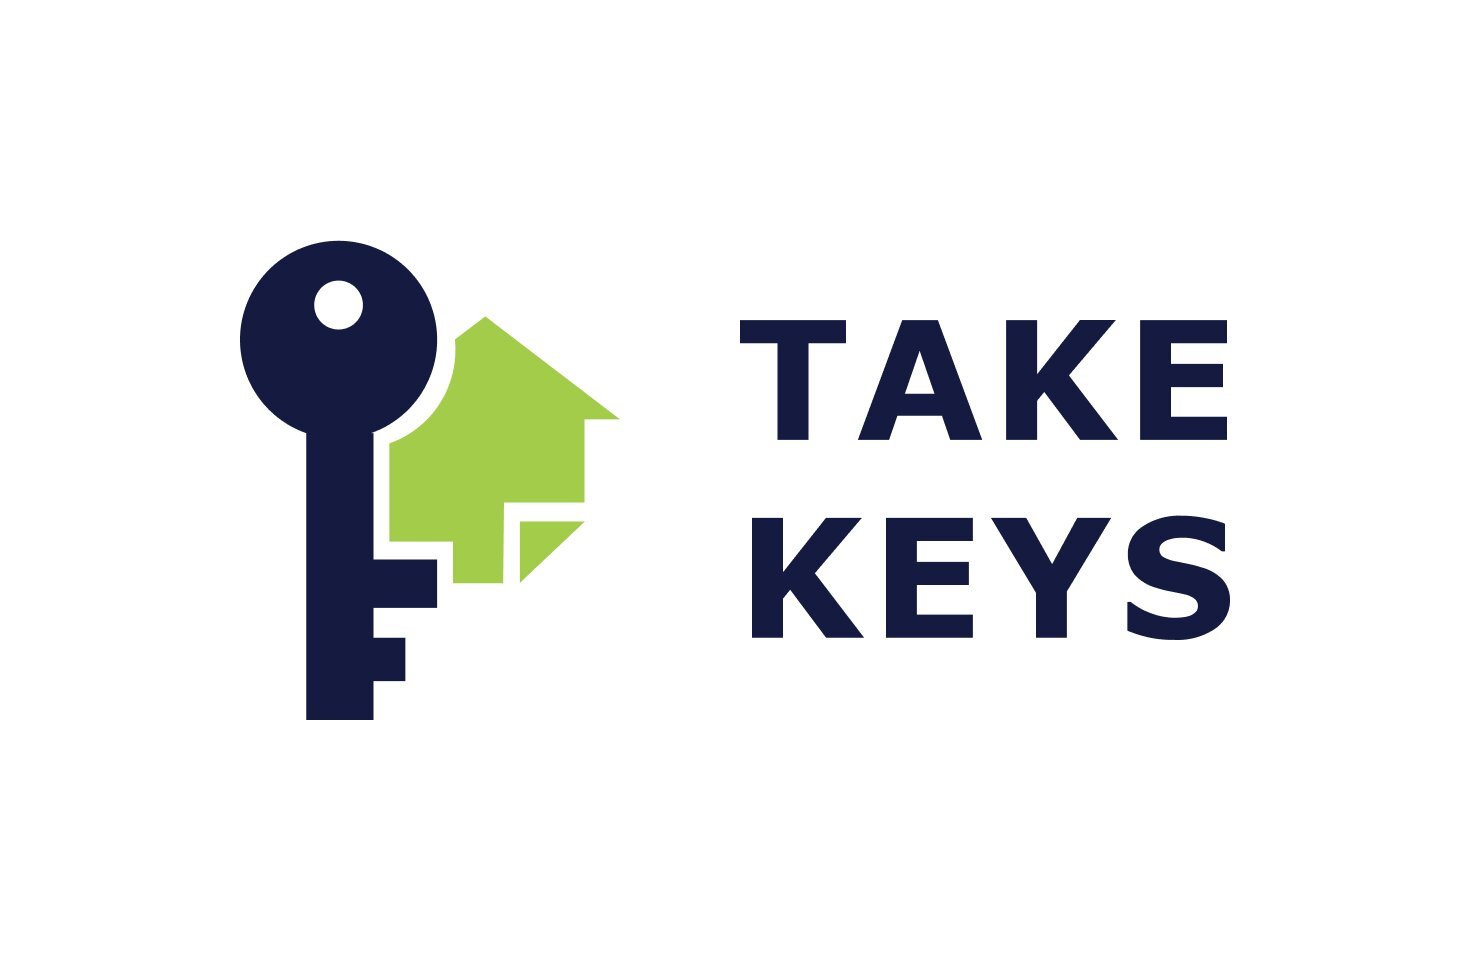 I take my key. Take the Key. Keys. Take Keys отзывы. Englishman take Keys.